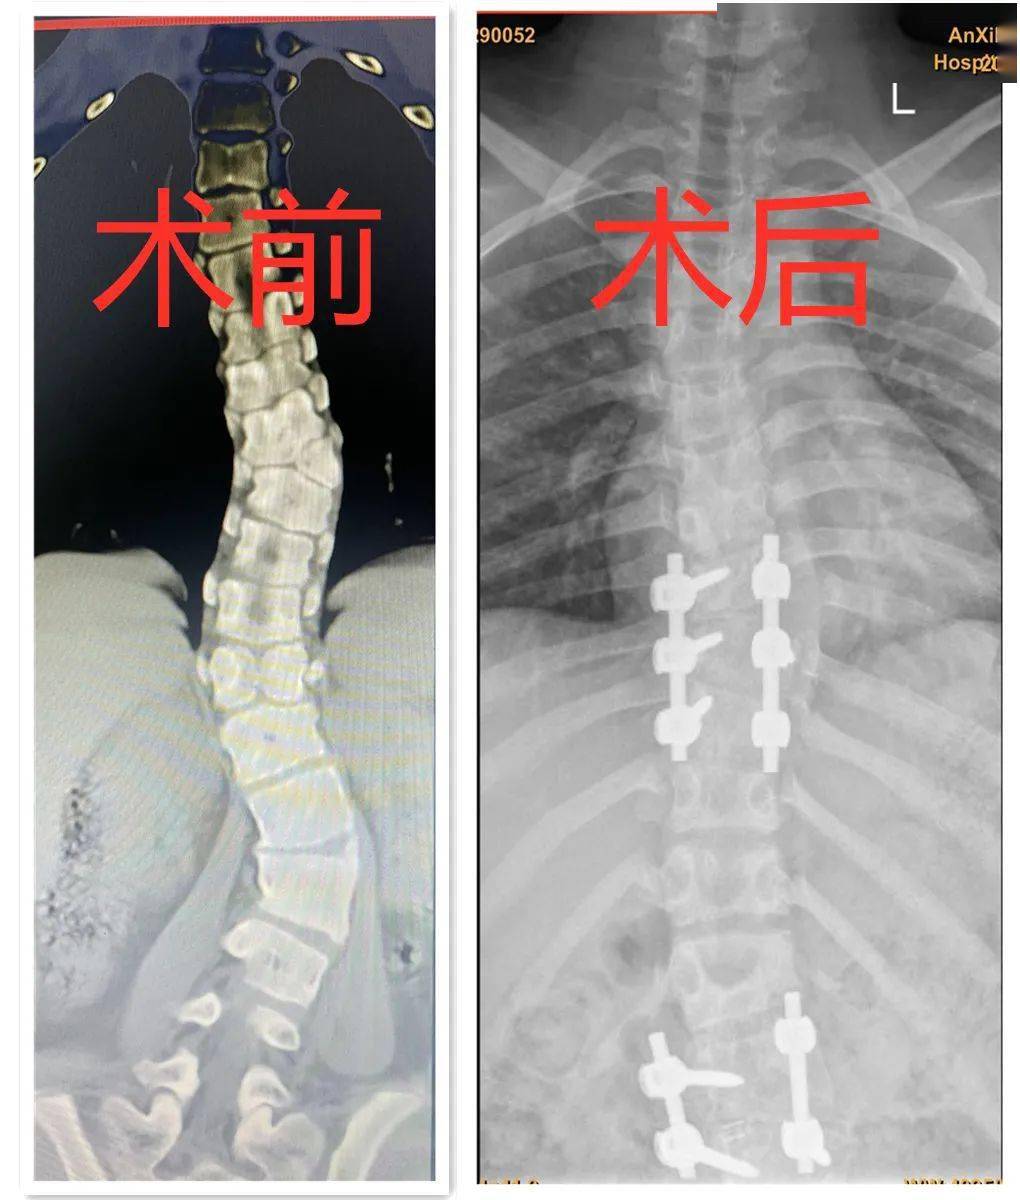 技术突破安溪县医院开展首例重度脊柱侧弯矫形手术